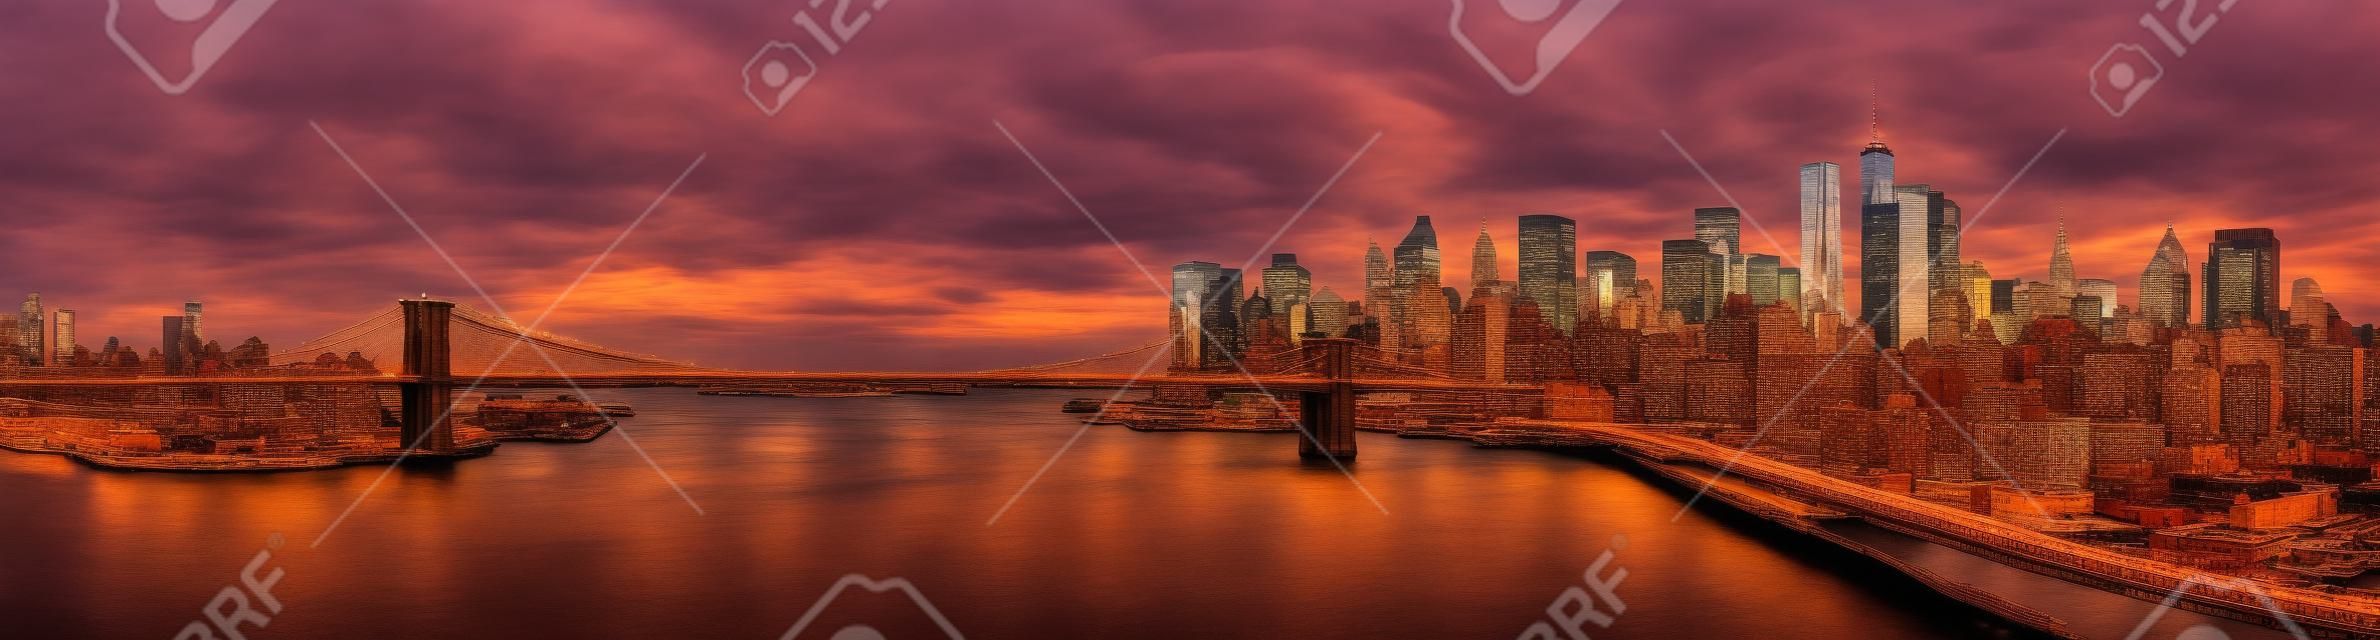 夕暮れ時のブルックリン橋のパノラマ。ブルックリンとフリーダム タワーによって支配される、ニューヨーク金融街のスカイラインの象徴的なランドマークに します。